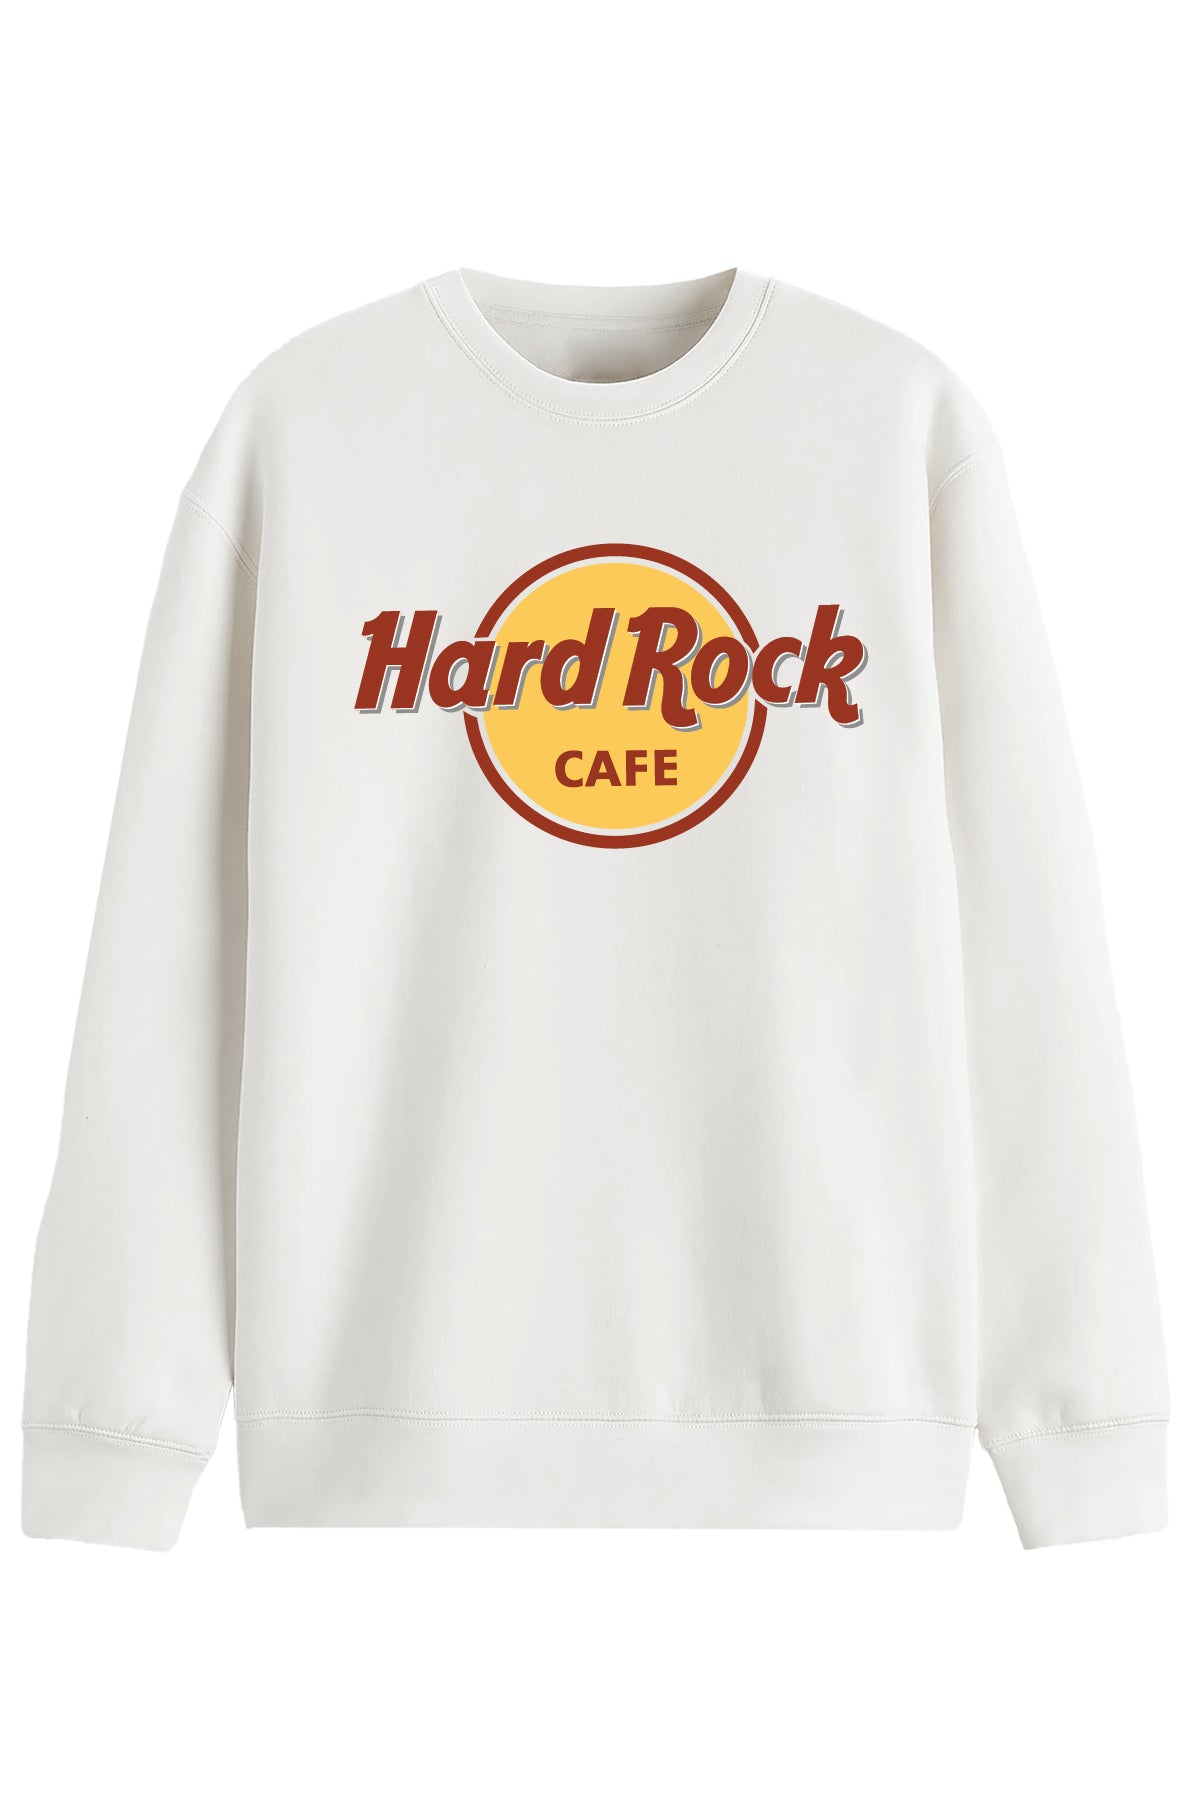 Hard Rock- Sweatshirt